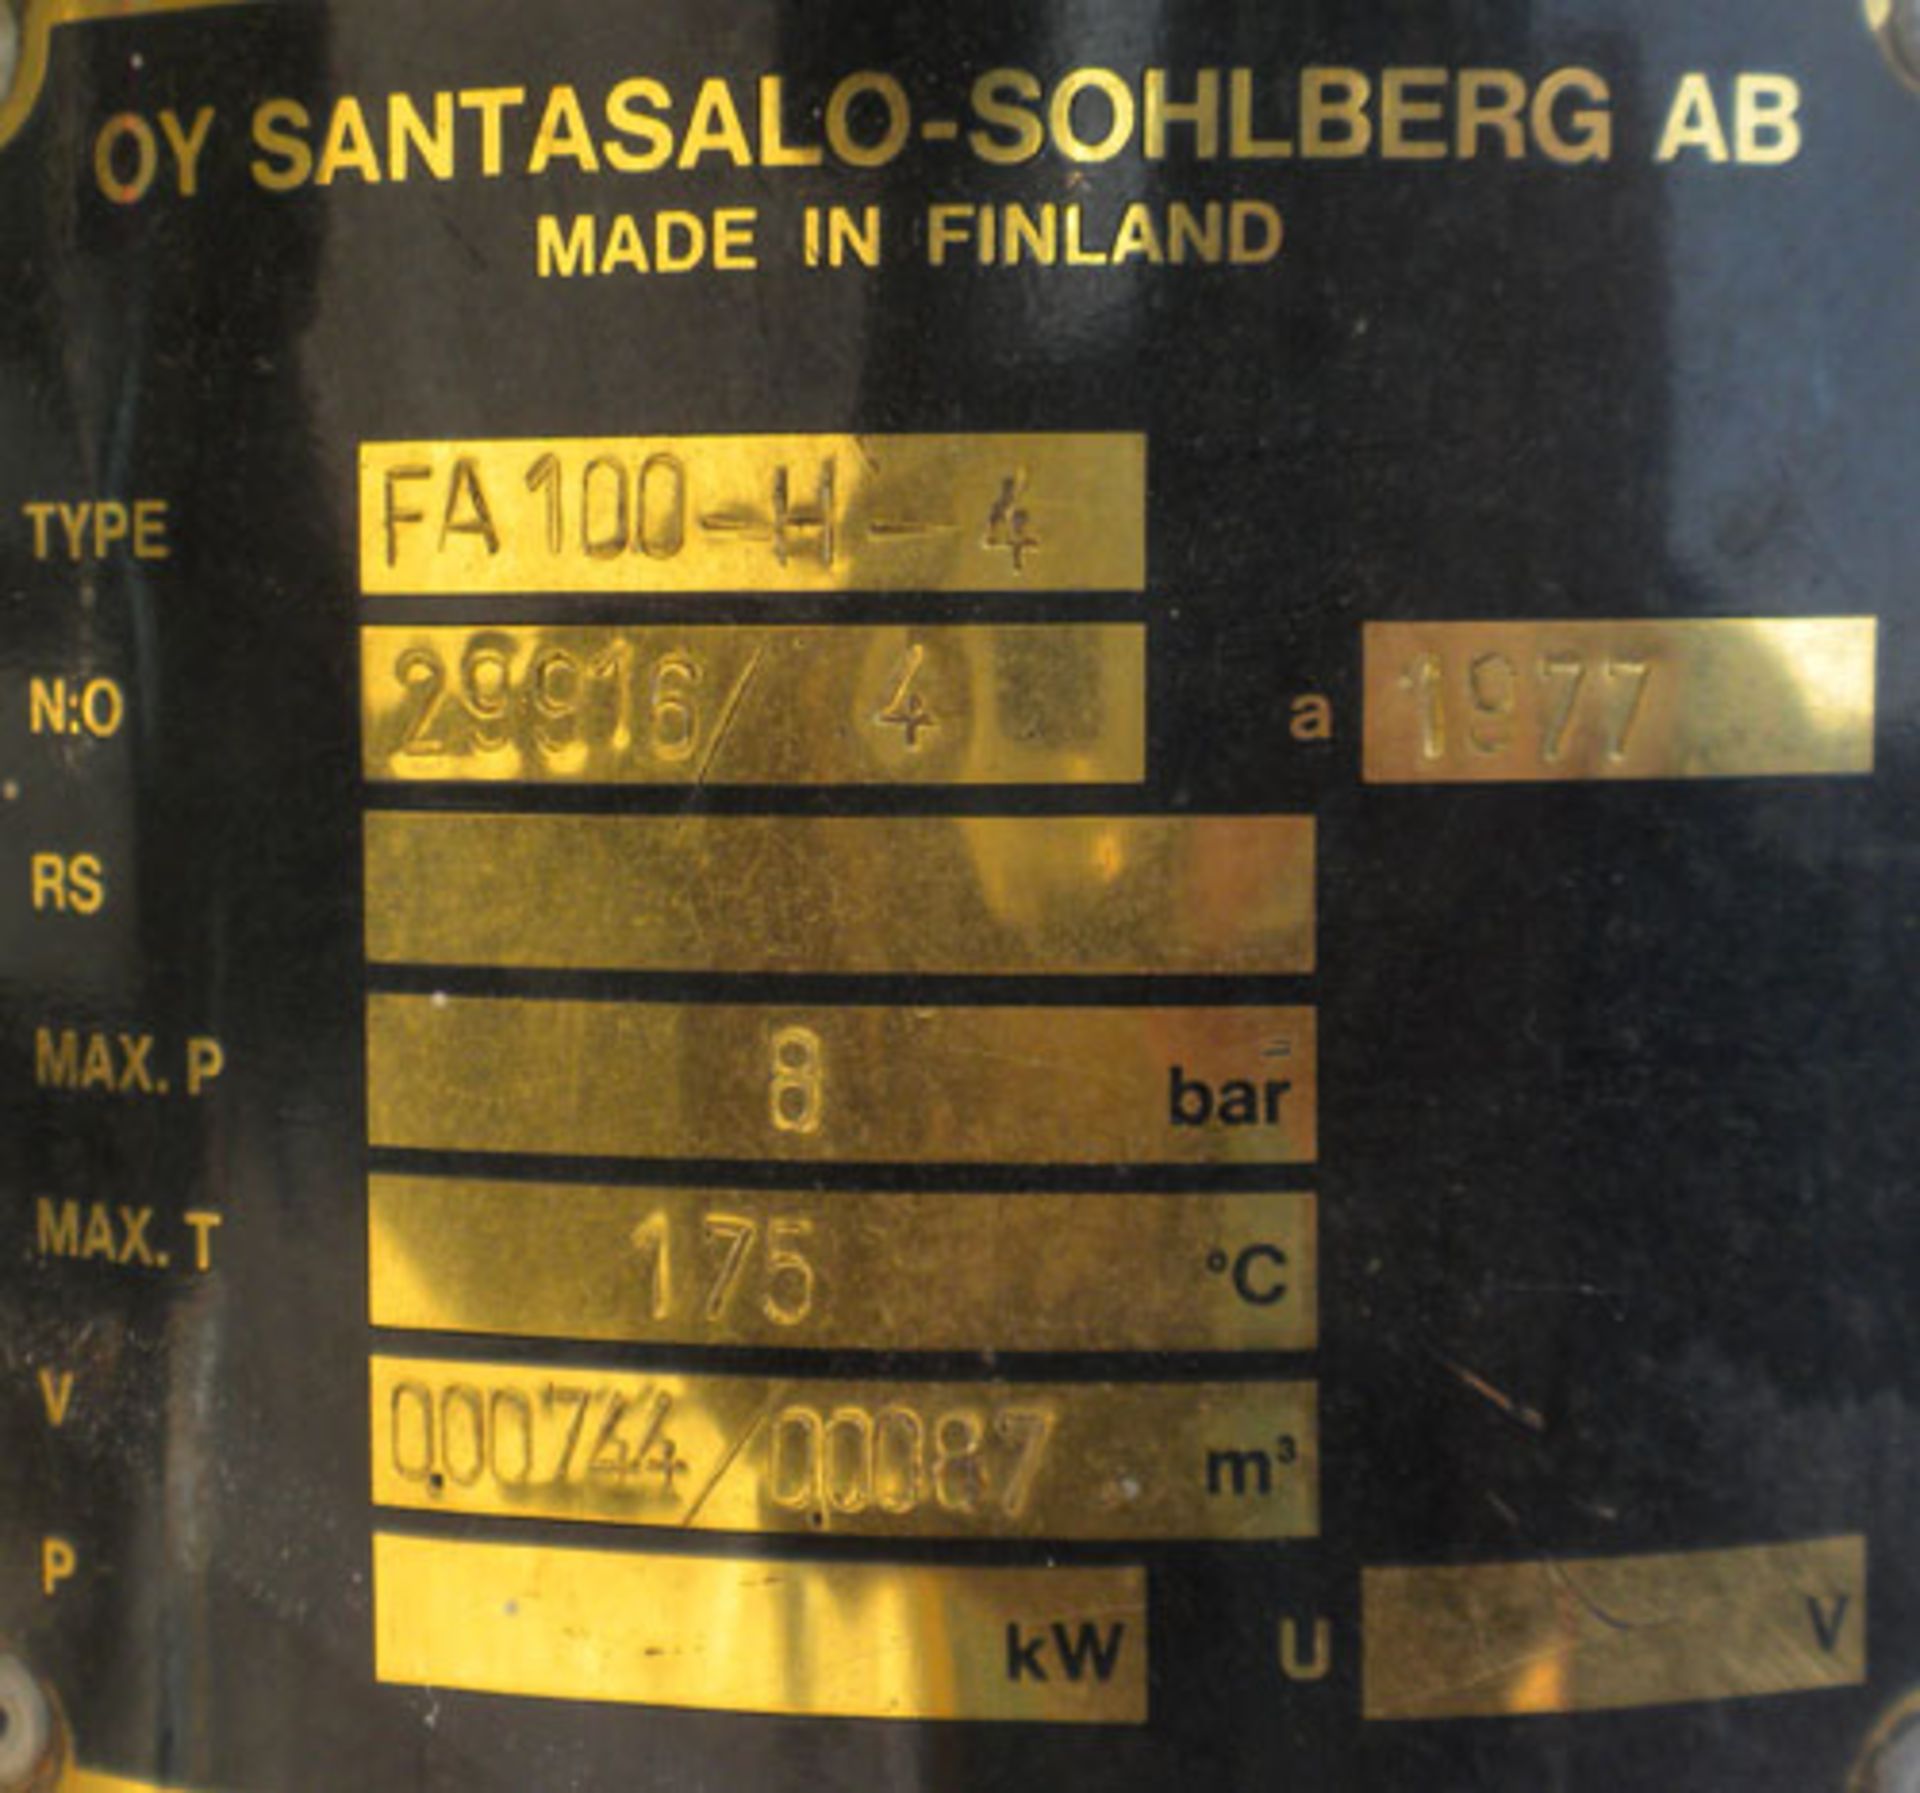 Santasalo-Sohlberg Model FA-100-H4 Finn Aqua Sabex Distiller - Image 11 of 12